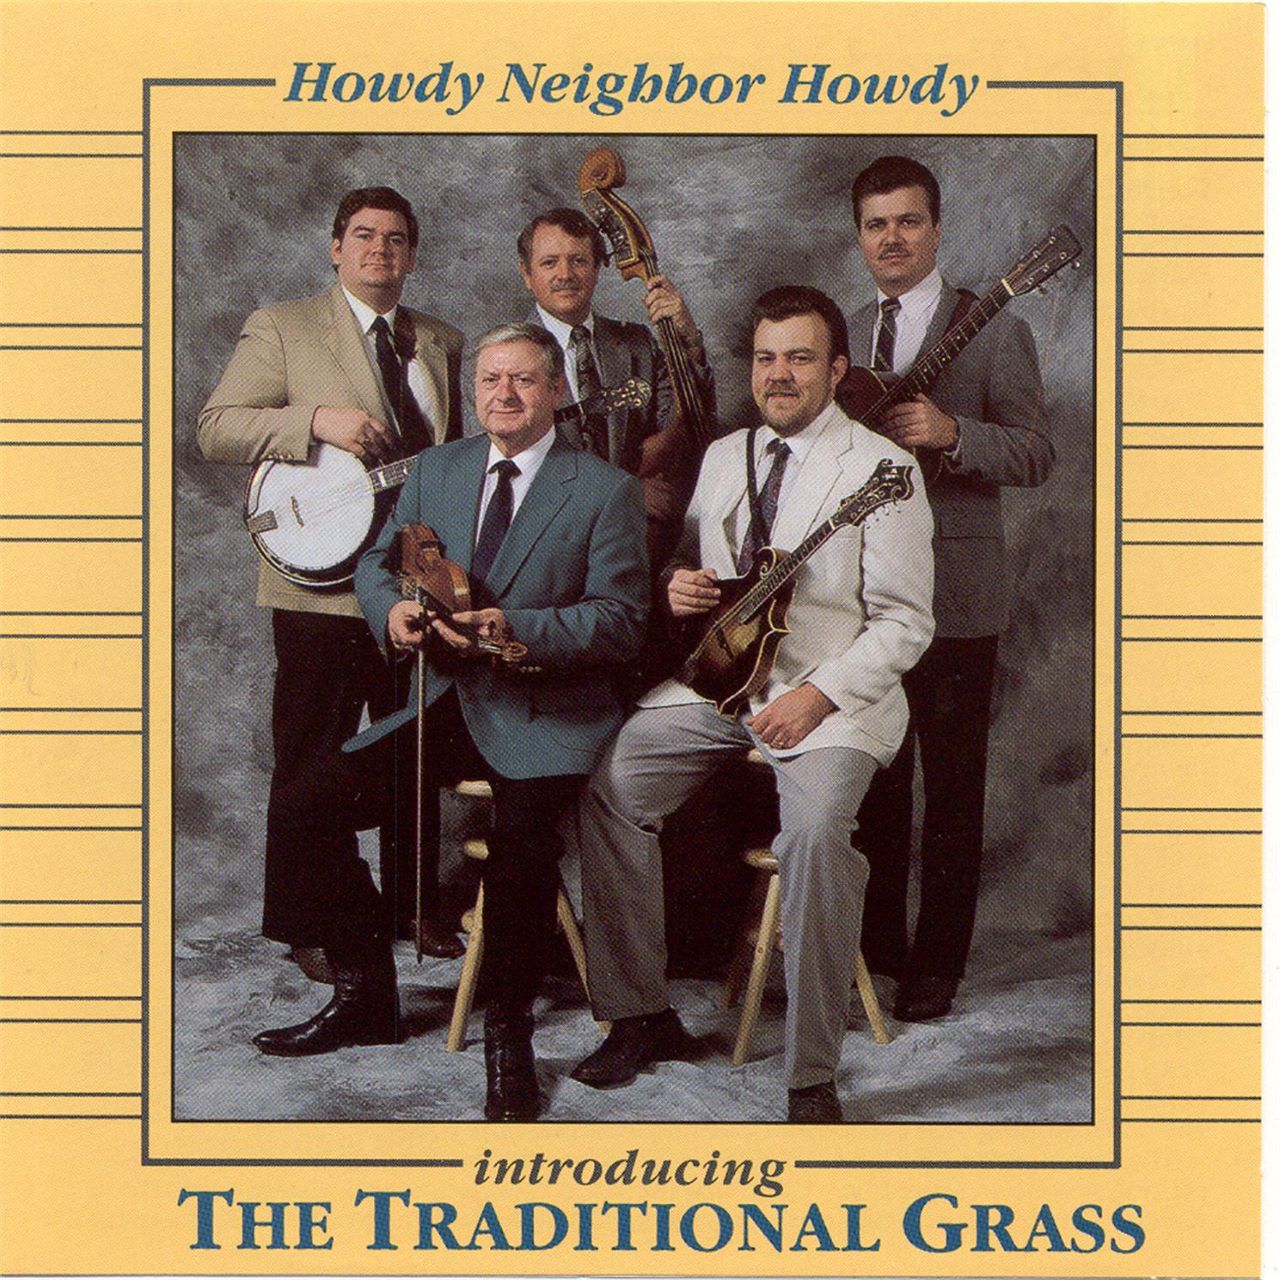 Traditional Grass - Howdy Neighbor Howdy cover album